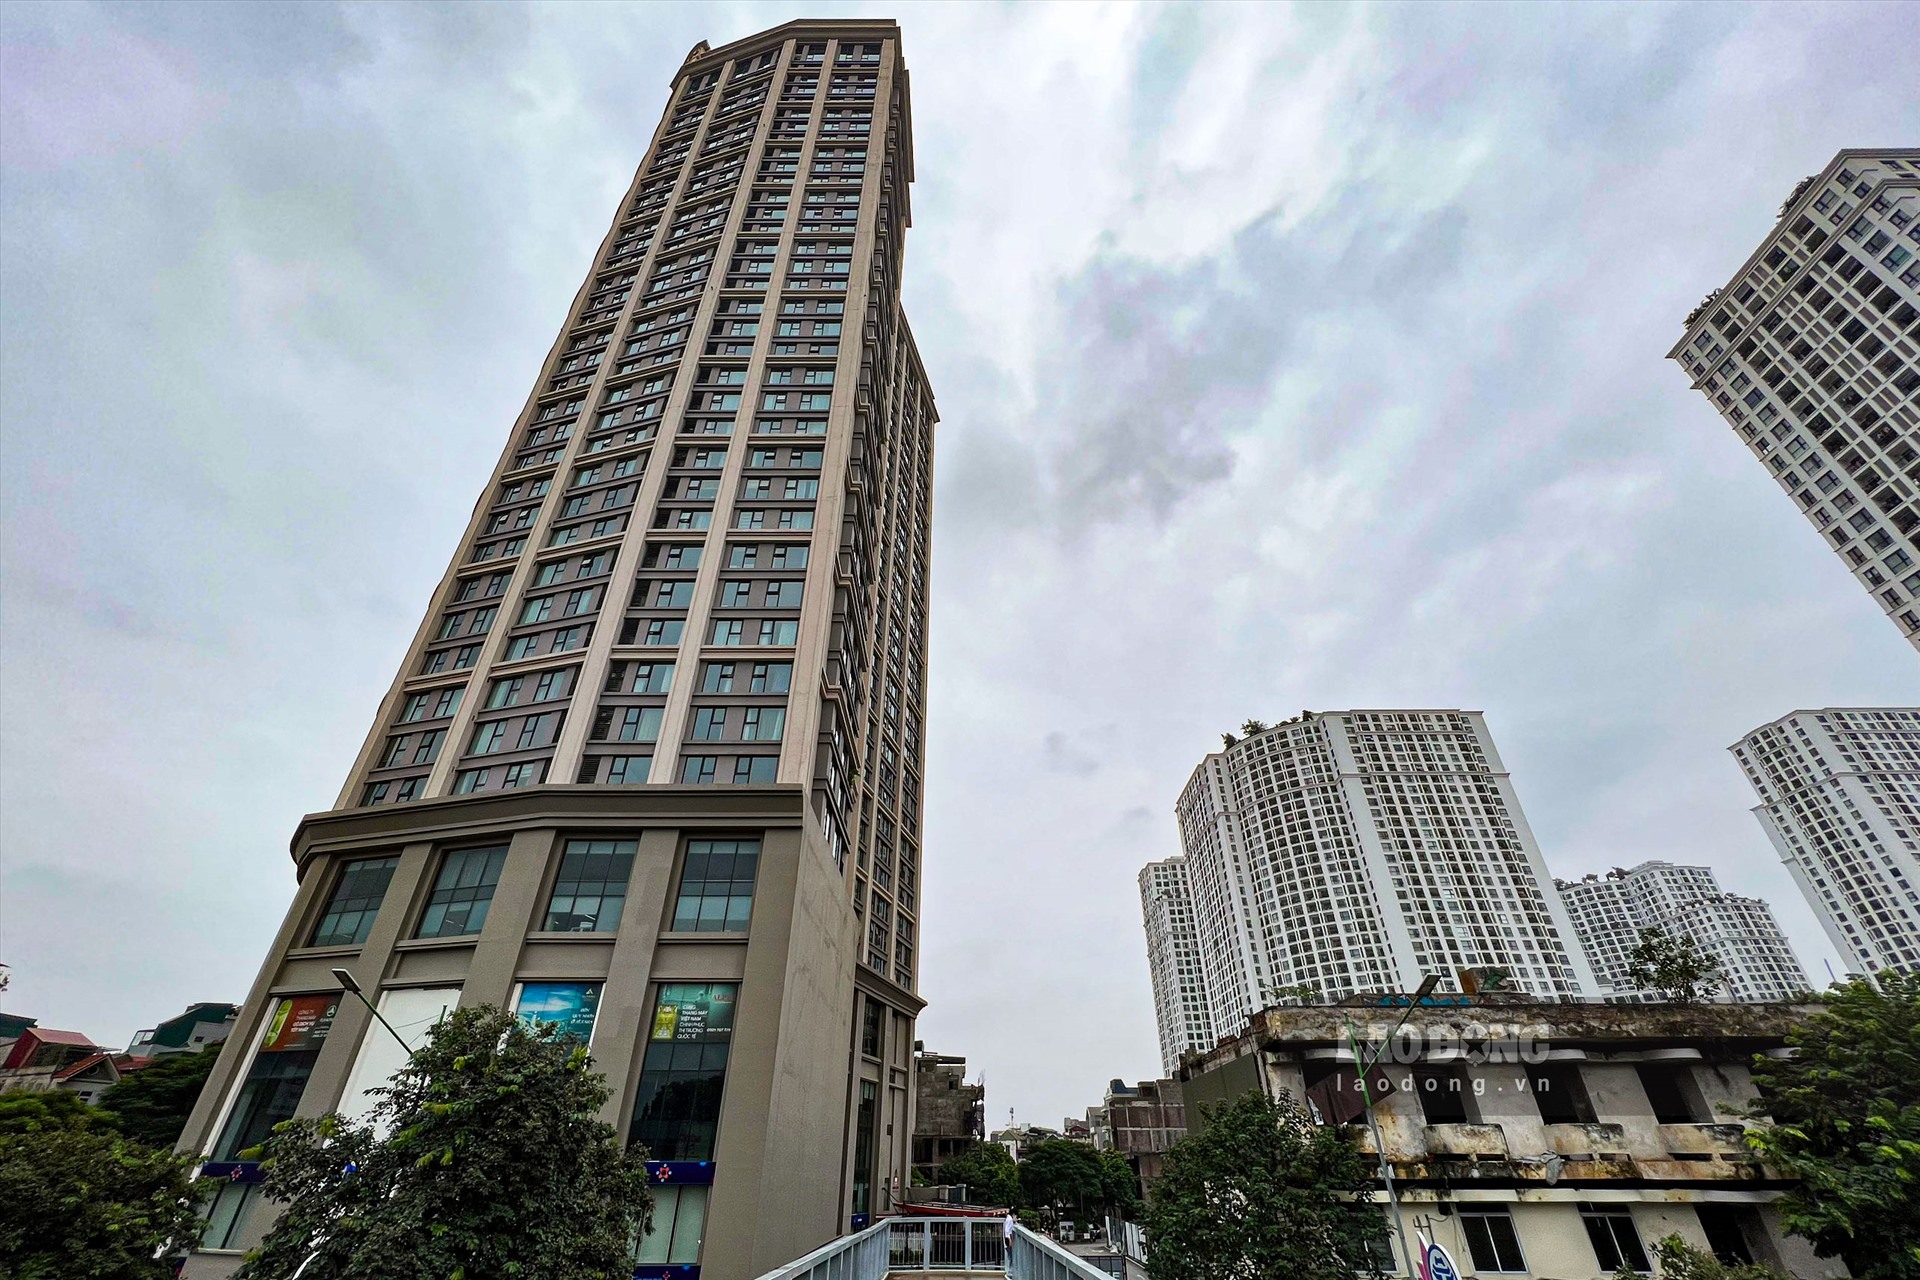 Được biết, dự án này do Công ty Bất động sản Hoa Anh Đào (Công ty Hoa Anh Đào) làm chủ đầu tư, nằm trên diện tích khu đất rộng 6.973m2. Trong đó, diện tích xây dựng là 3.137m2, tổ hợp bao gồm 2 tòa tháp A và B, cao 36 tầng và 3 tầng hầm. Tháp A có diện tích 1.800m2 với tổng số 410 căn hộ cao cấp (từ tầng 5 đến tầng 36) và Tháp B có diện tích 1.333m2 là khu khách sạn và căn hộ dịch vụ. (Ảnh chụp tòa A đã xây dựng xong bên trái, tòa B vẫn chỉ là công trình cũ xuống cấp bên phải).